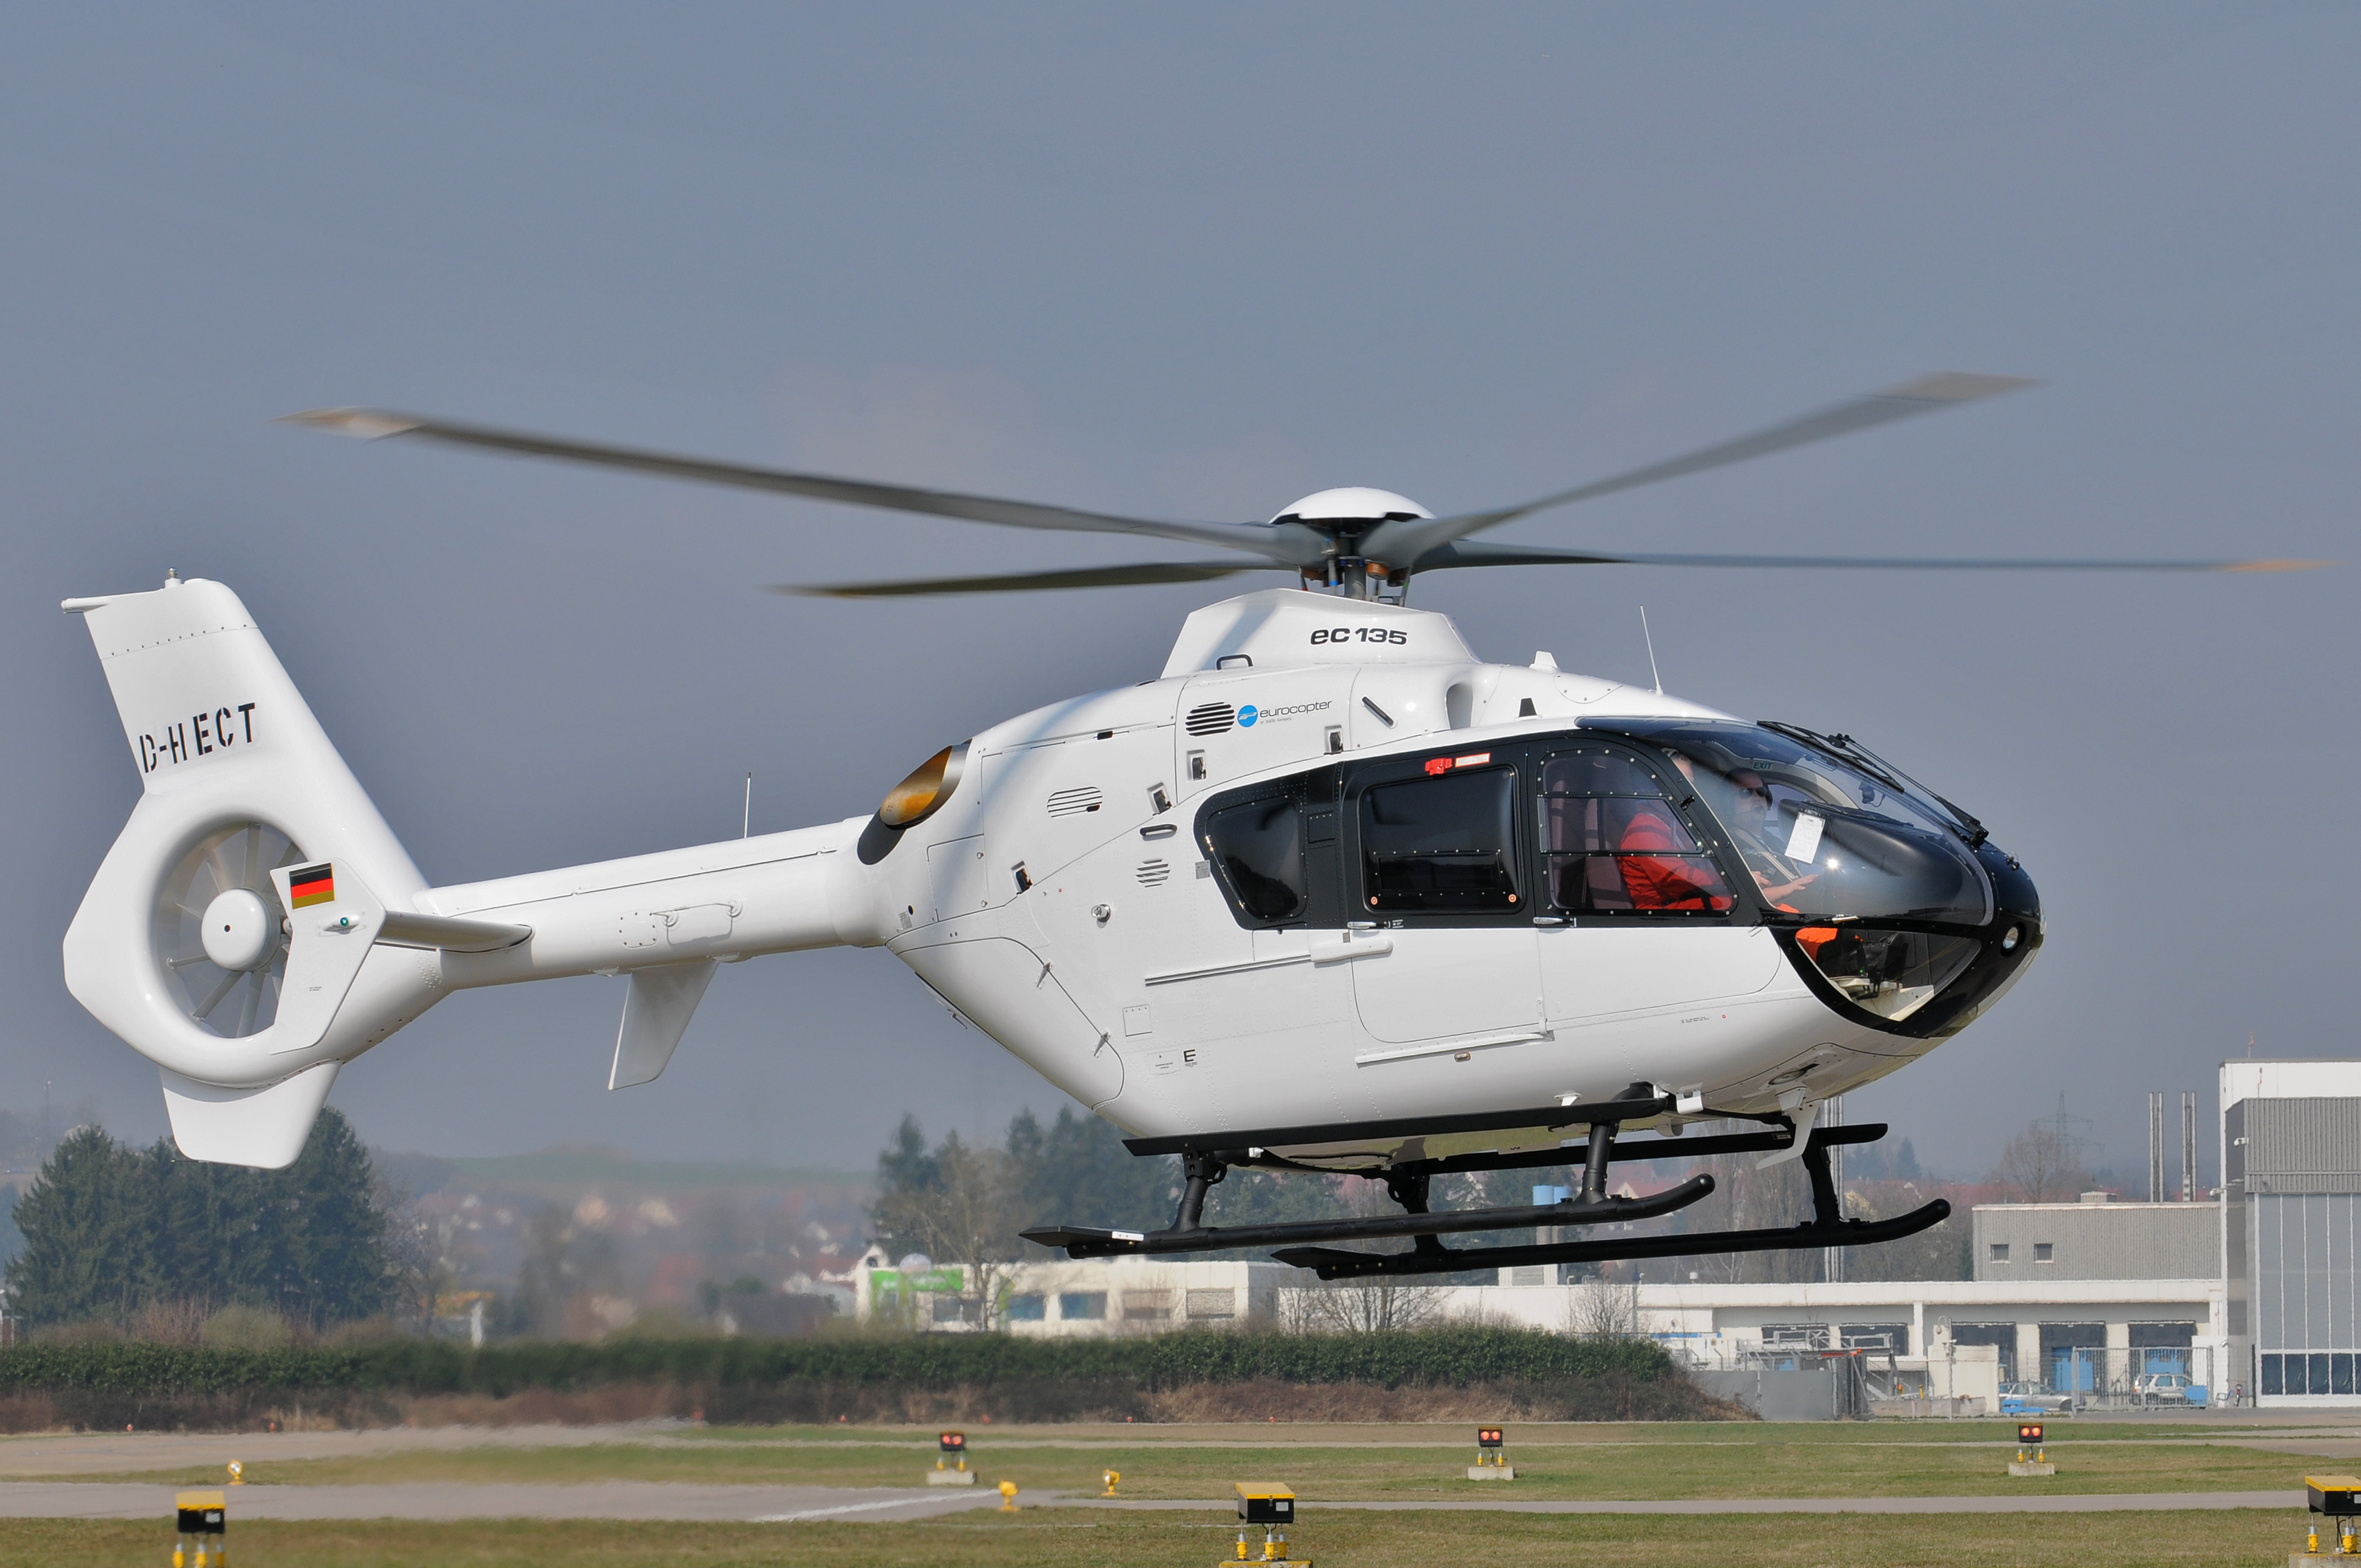 Eurocopter Ec135 Wallpapers